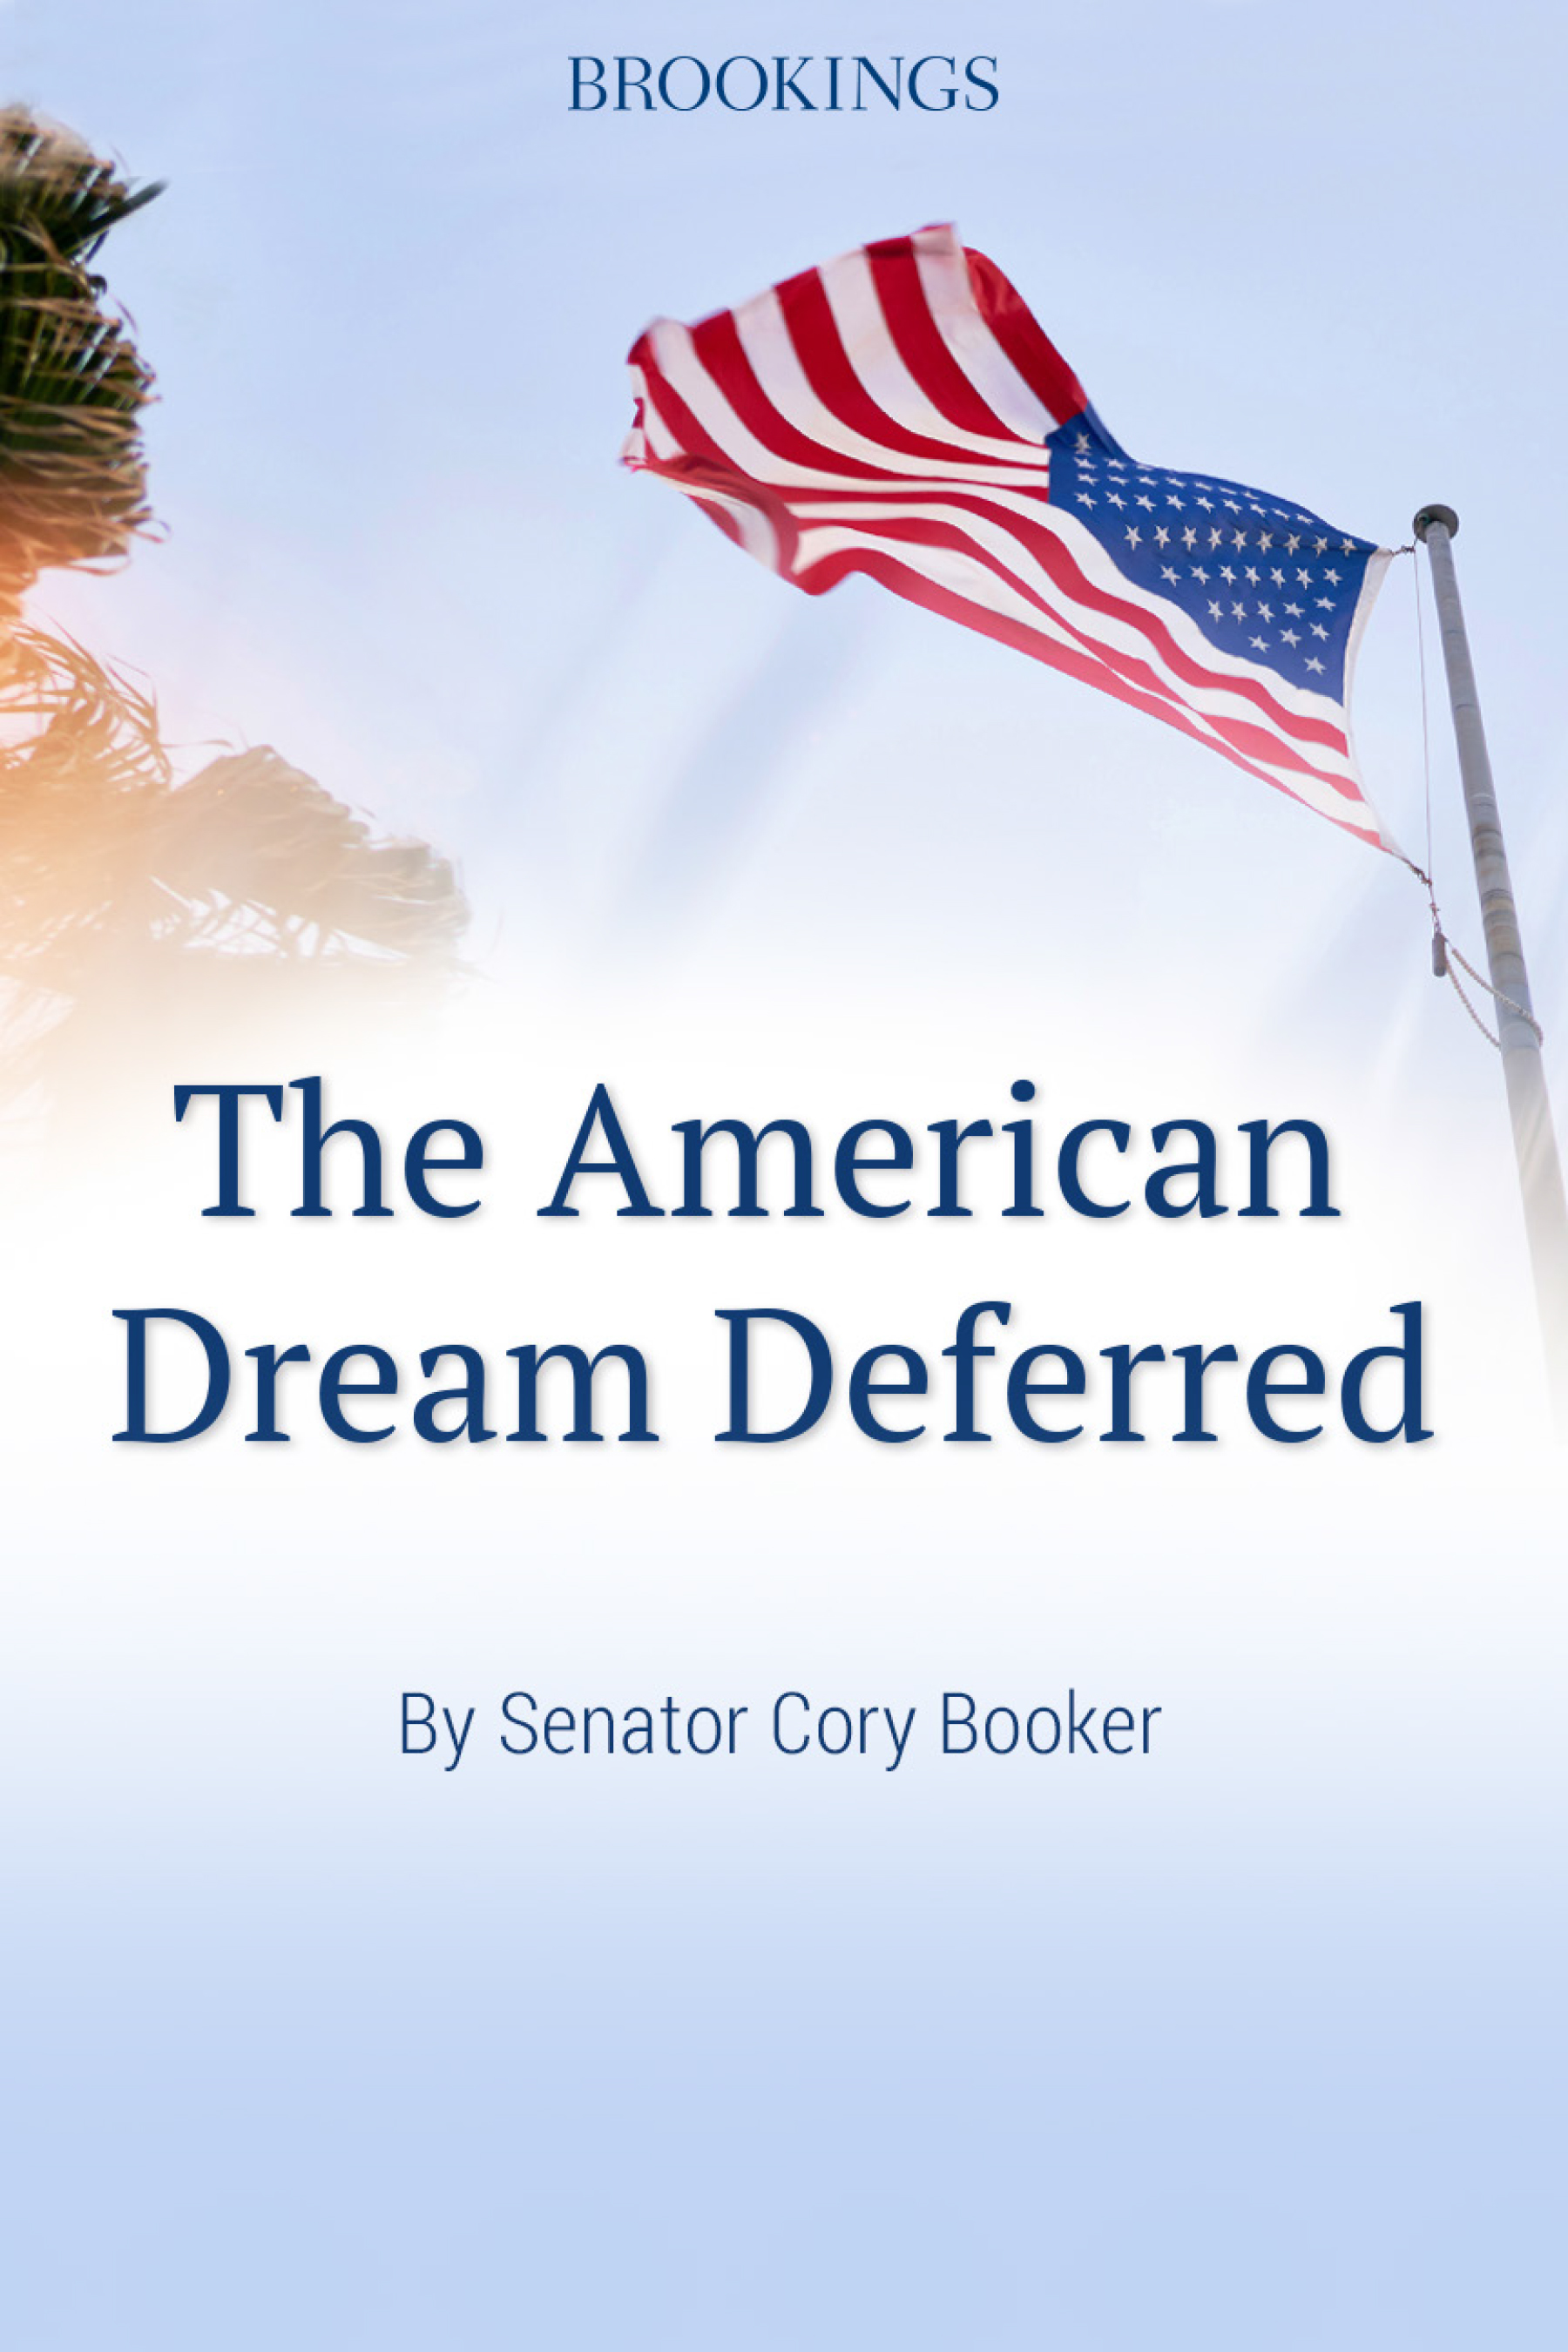 The American Dream Deferred